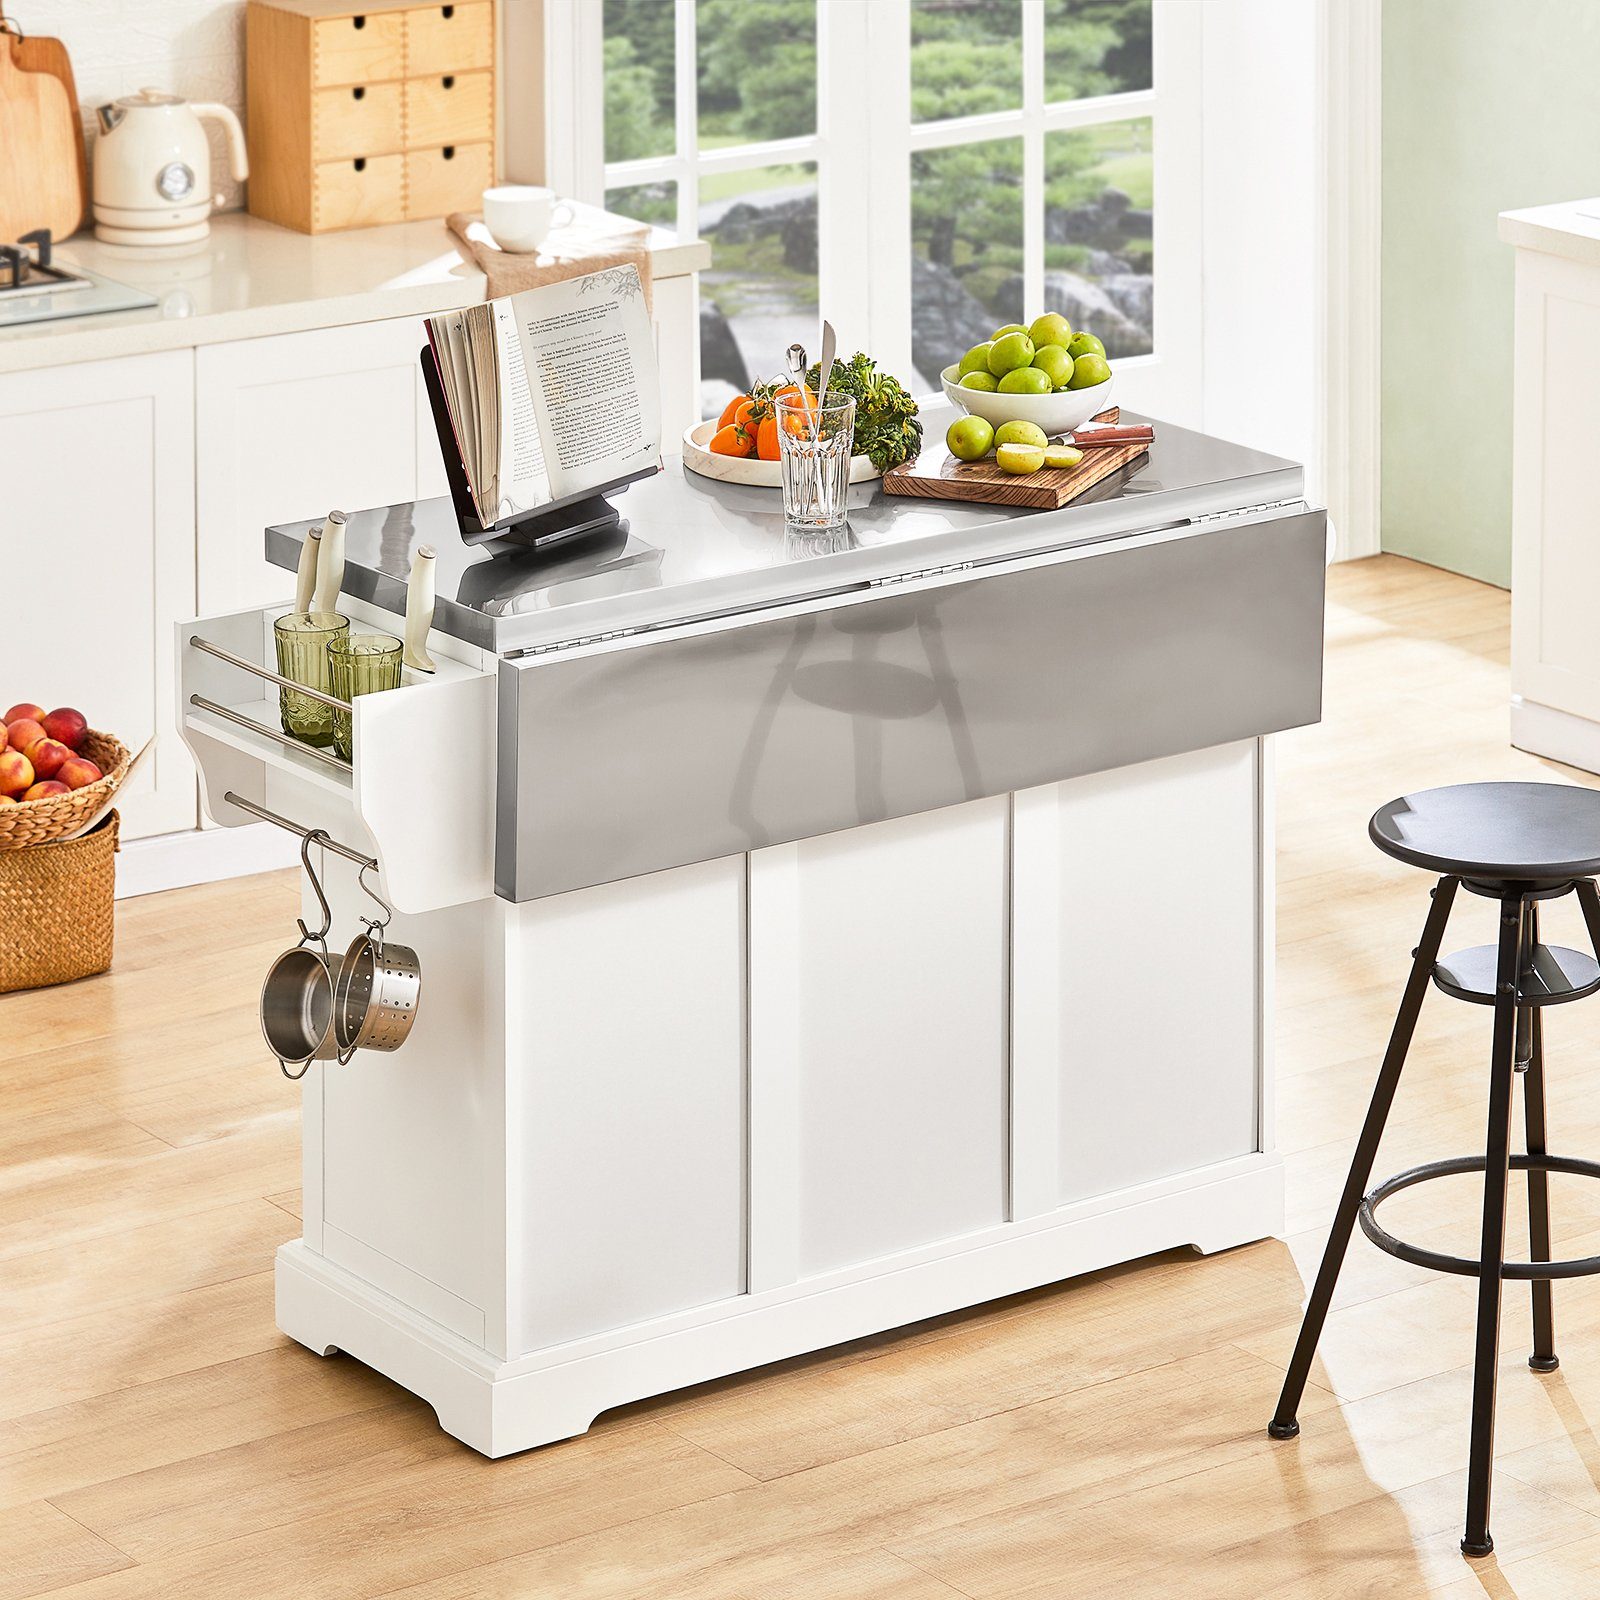 SoBuy Küchenwagen FKW41, weiß-grau Arbeitsfläche Kücheninsel Sideboard erweiterbarer Küchenschrank mit